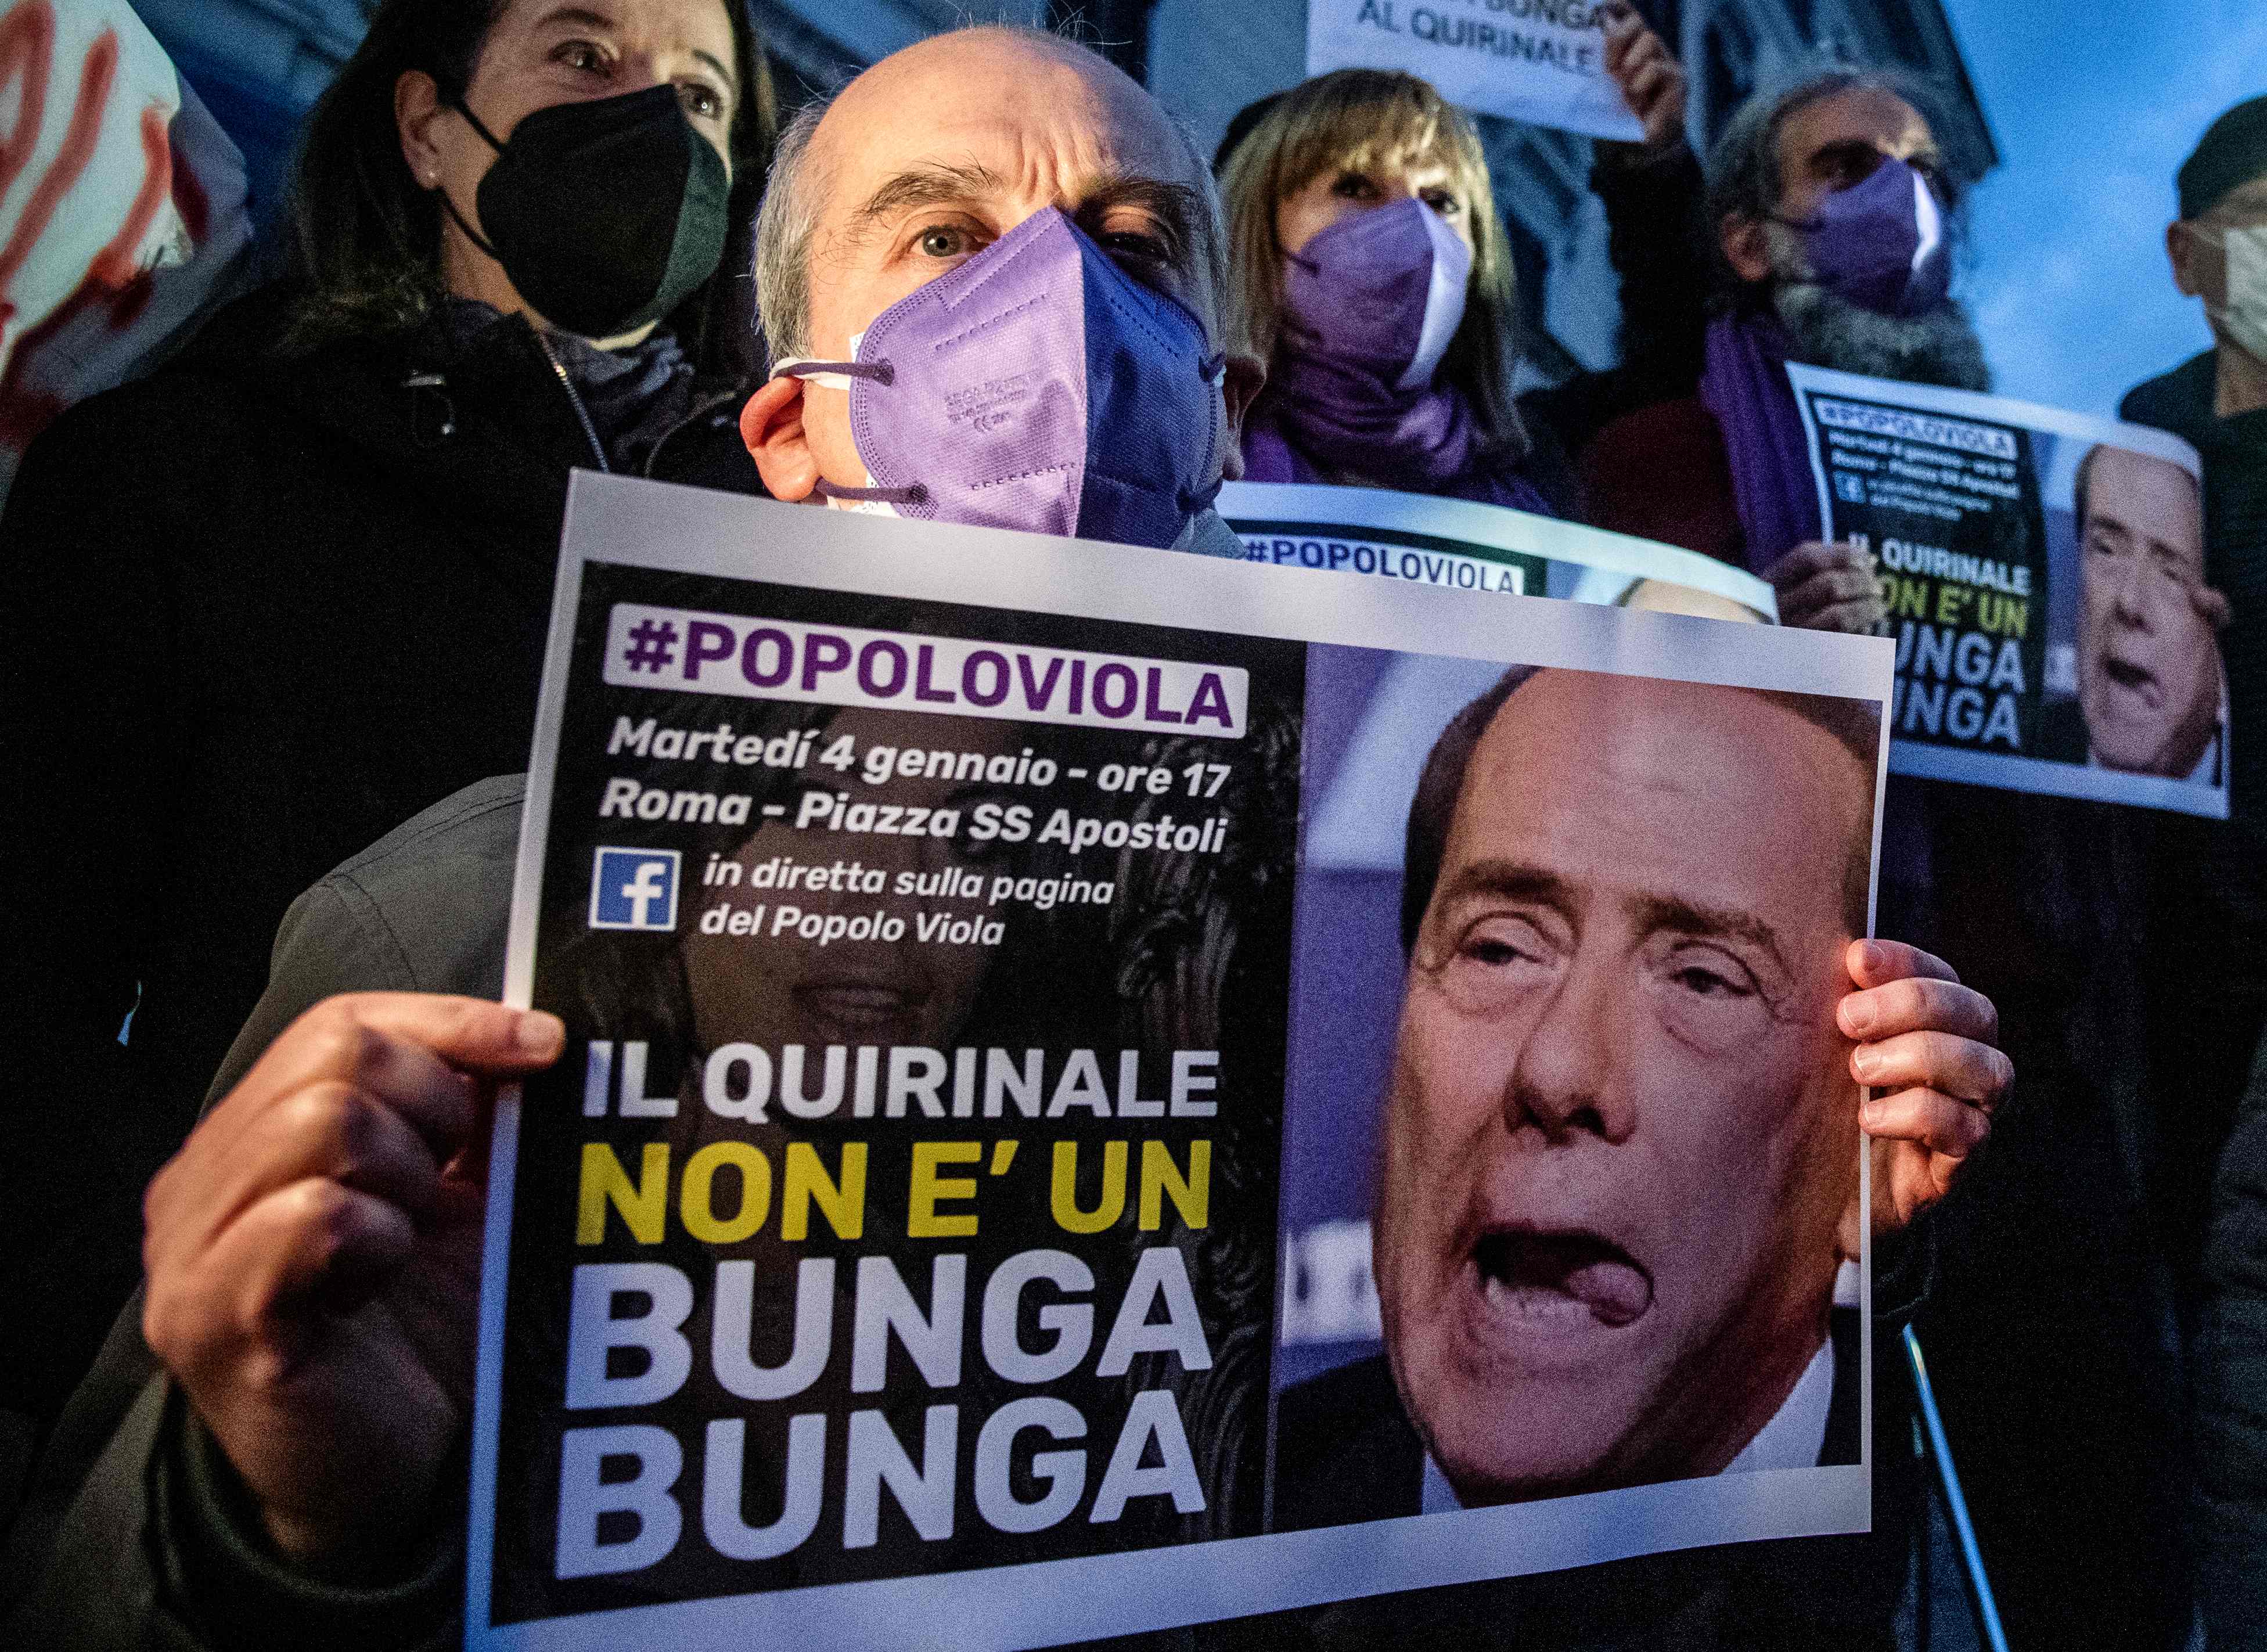 Un hombre sostiene un cartel con una fotografía de Berlusconi y la sentencia: “El Quirinal no es un ‘Bunga Bunga’”, durante una protesta en Roma en enero